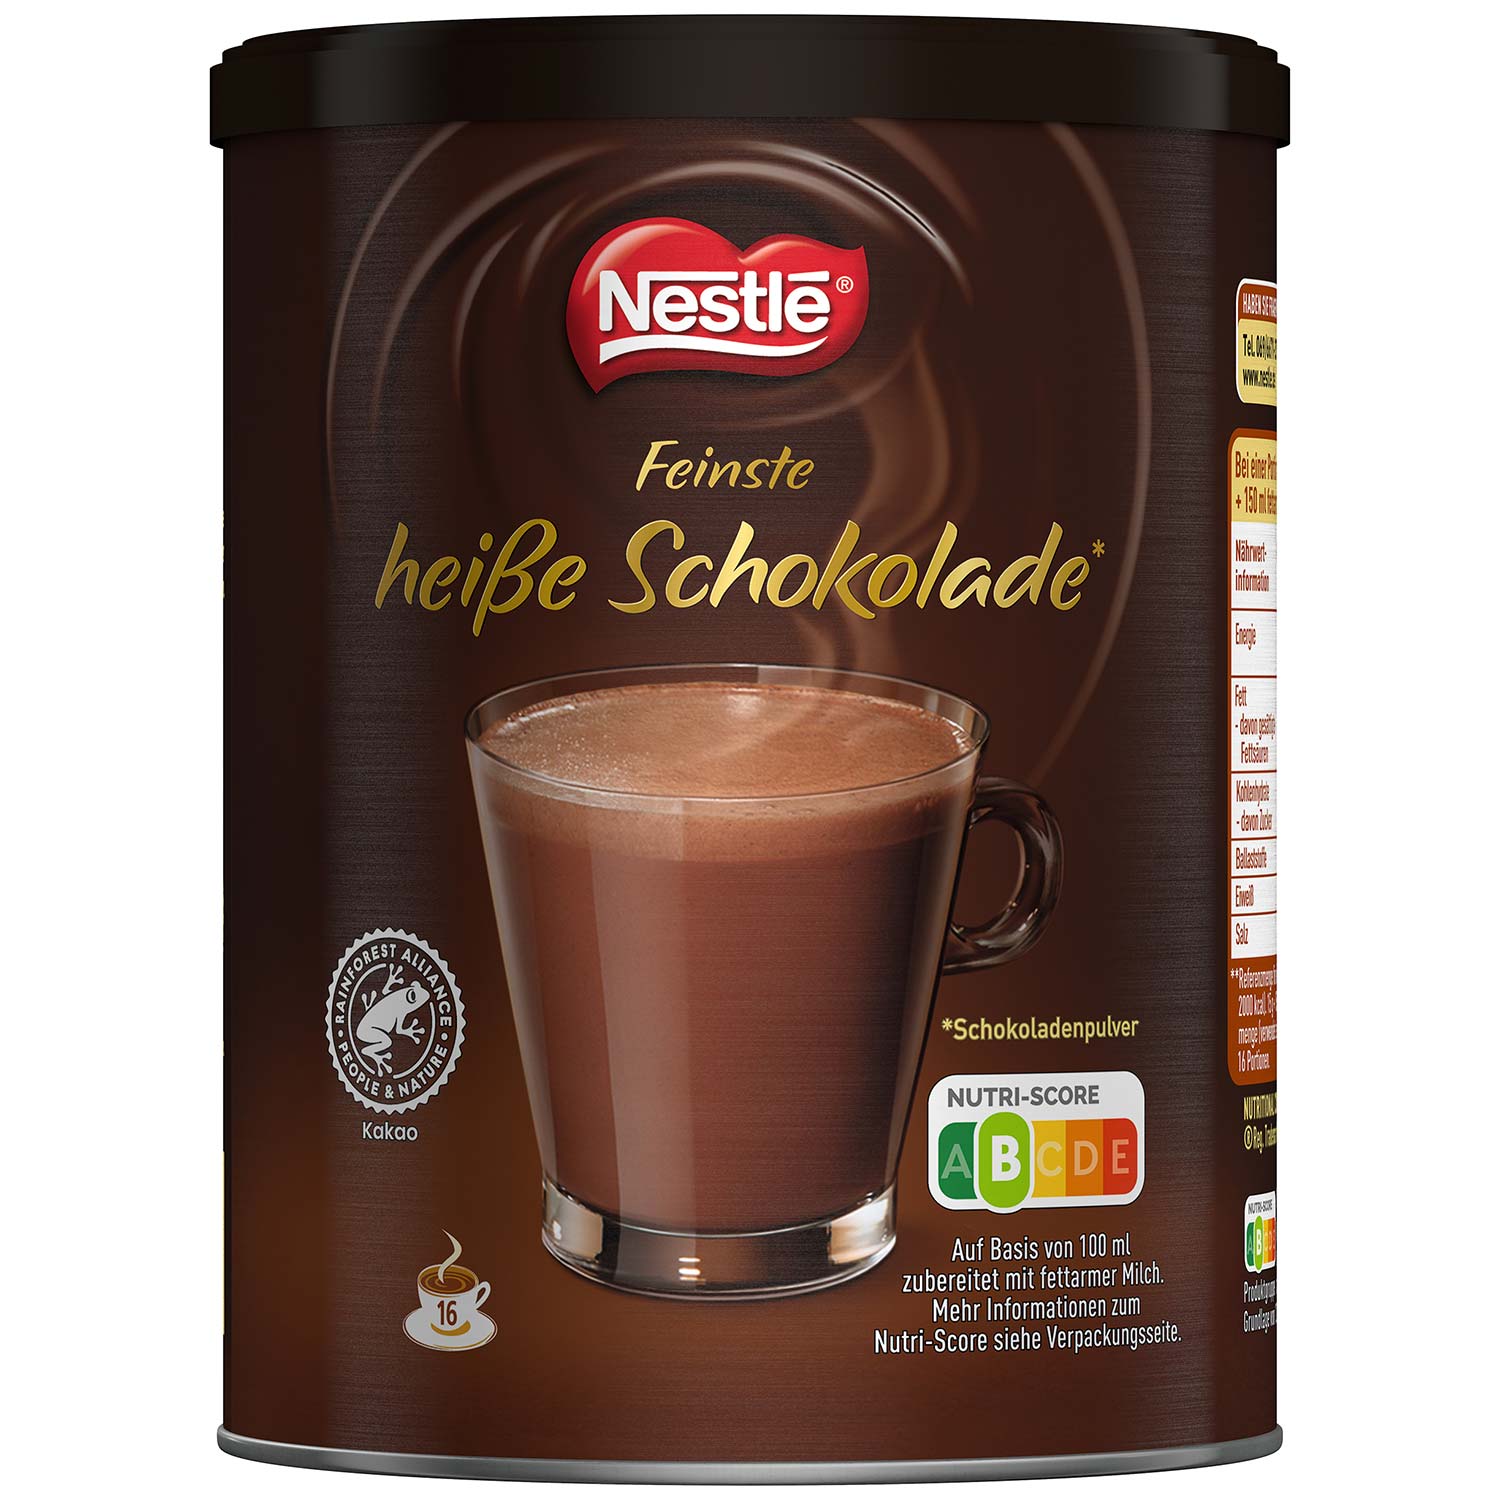 Nestlé Feinste heiße Schokolade 250g | Online kaufen im World of Sweets ...